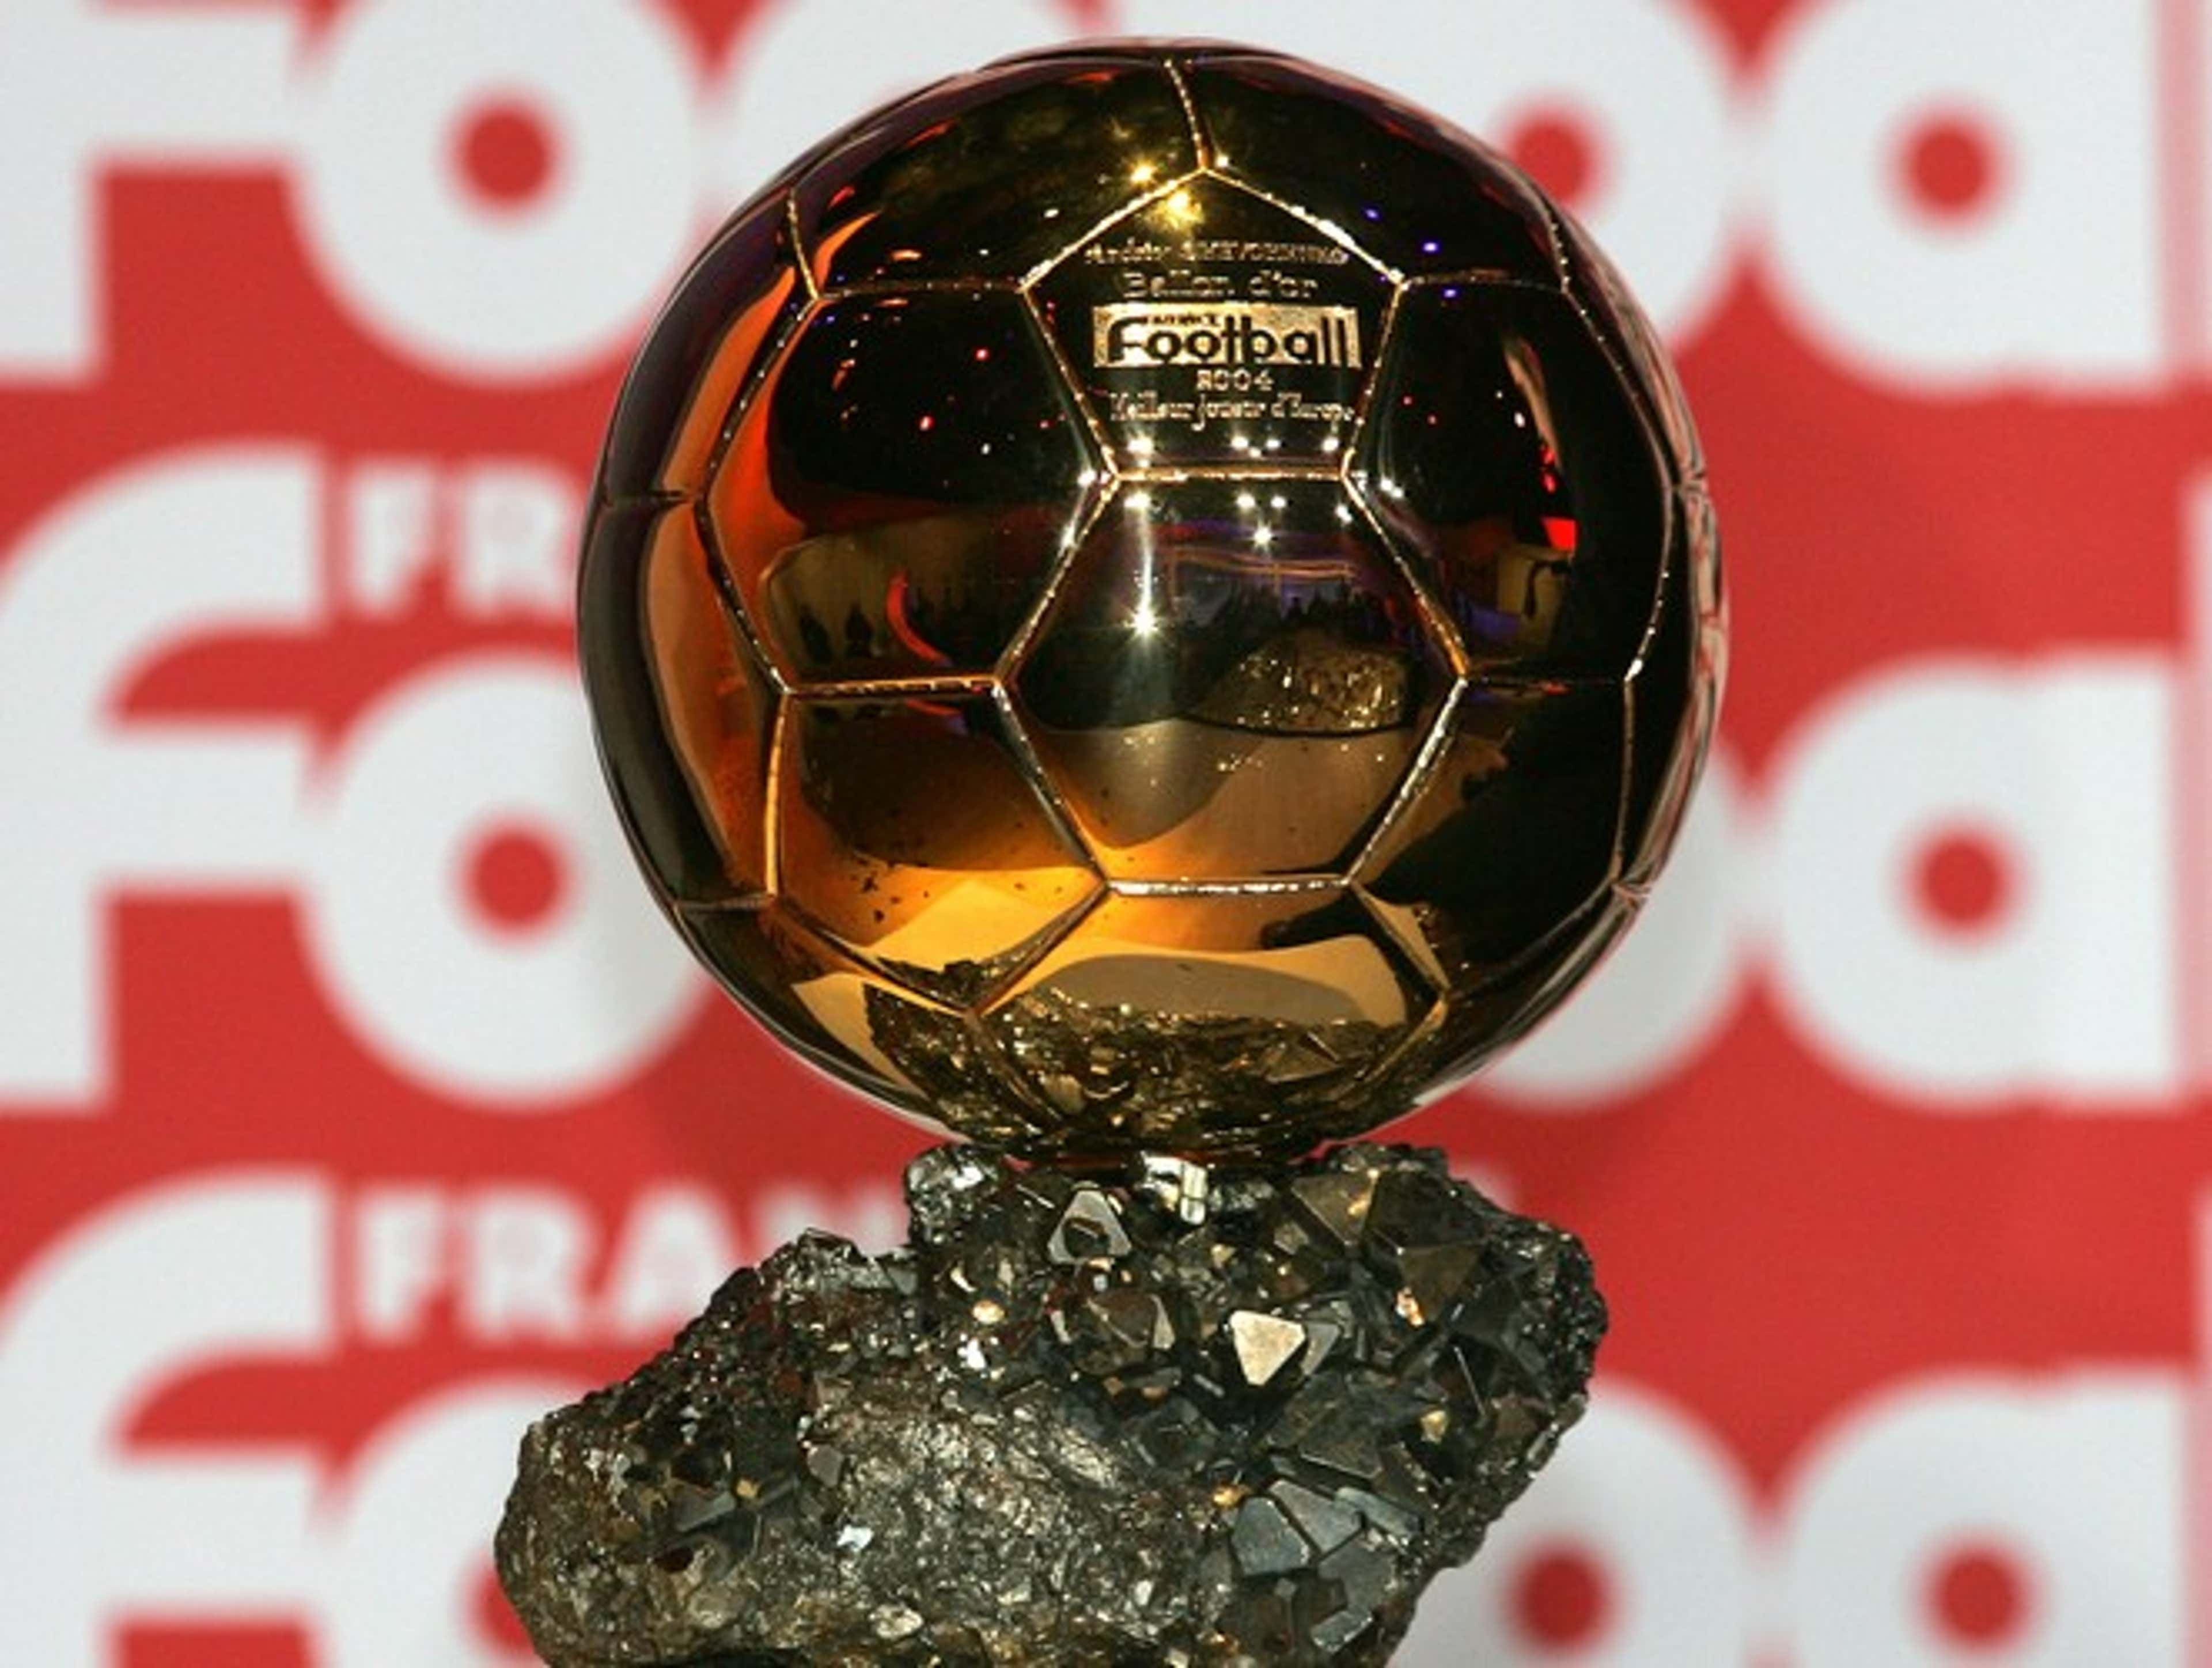 Qual é a origem do famoso premio do futebol 'Bola de Ouro'? - Quora